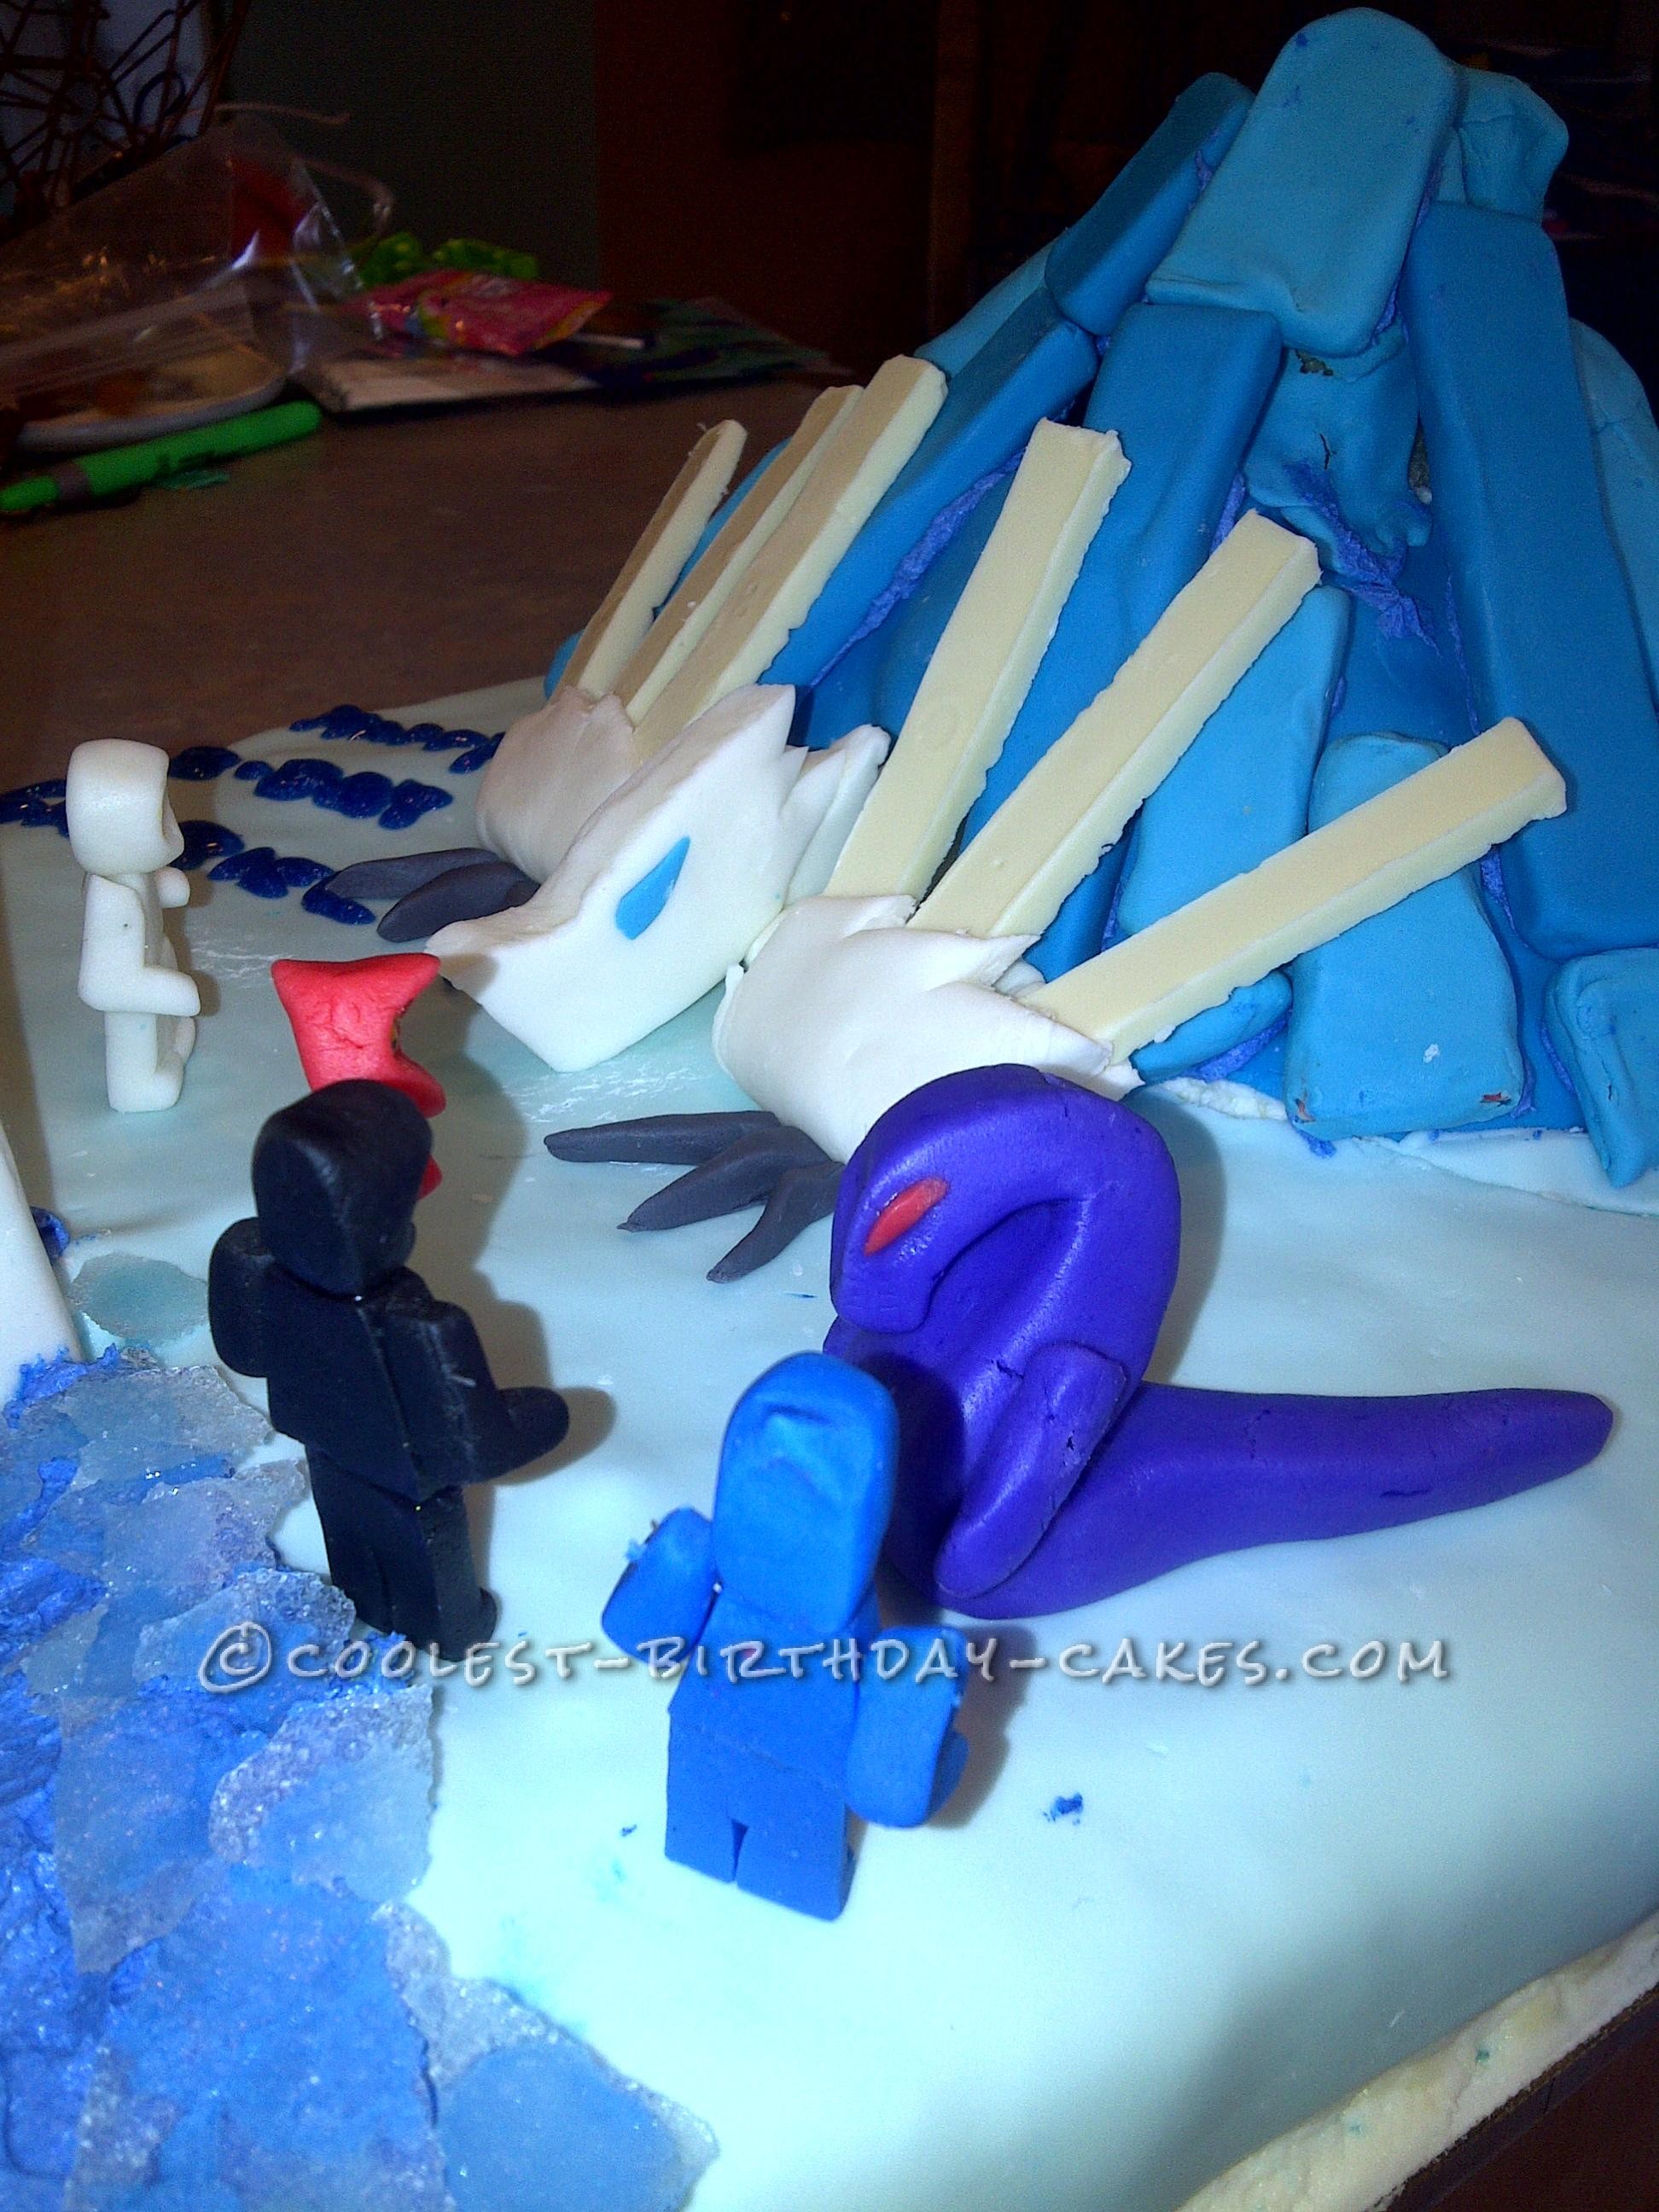 Cool Ninjago and Dragon Birthday Cake